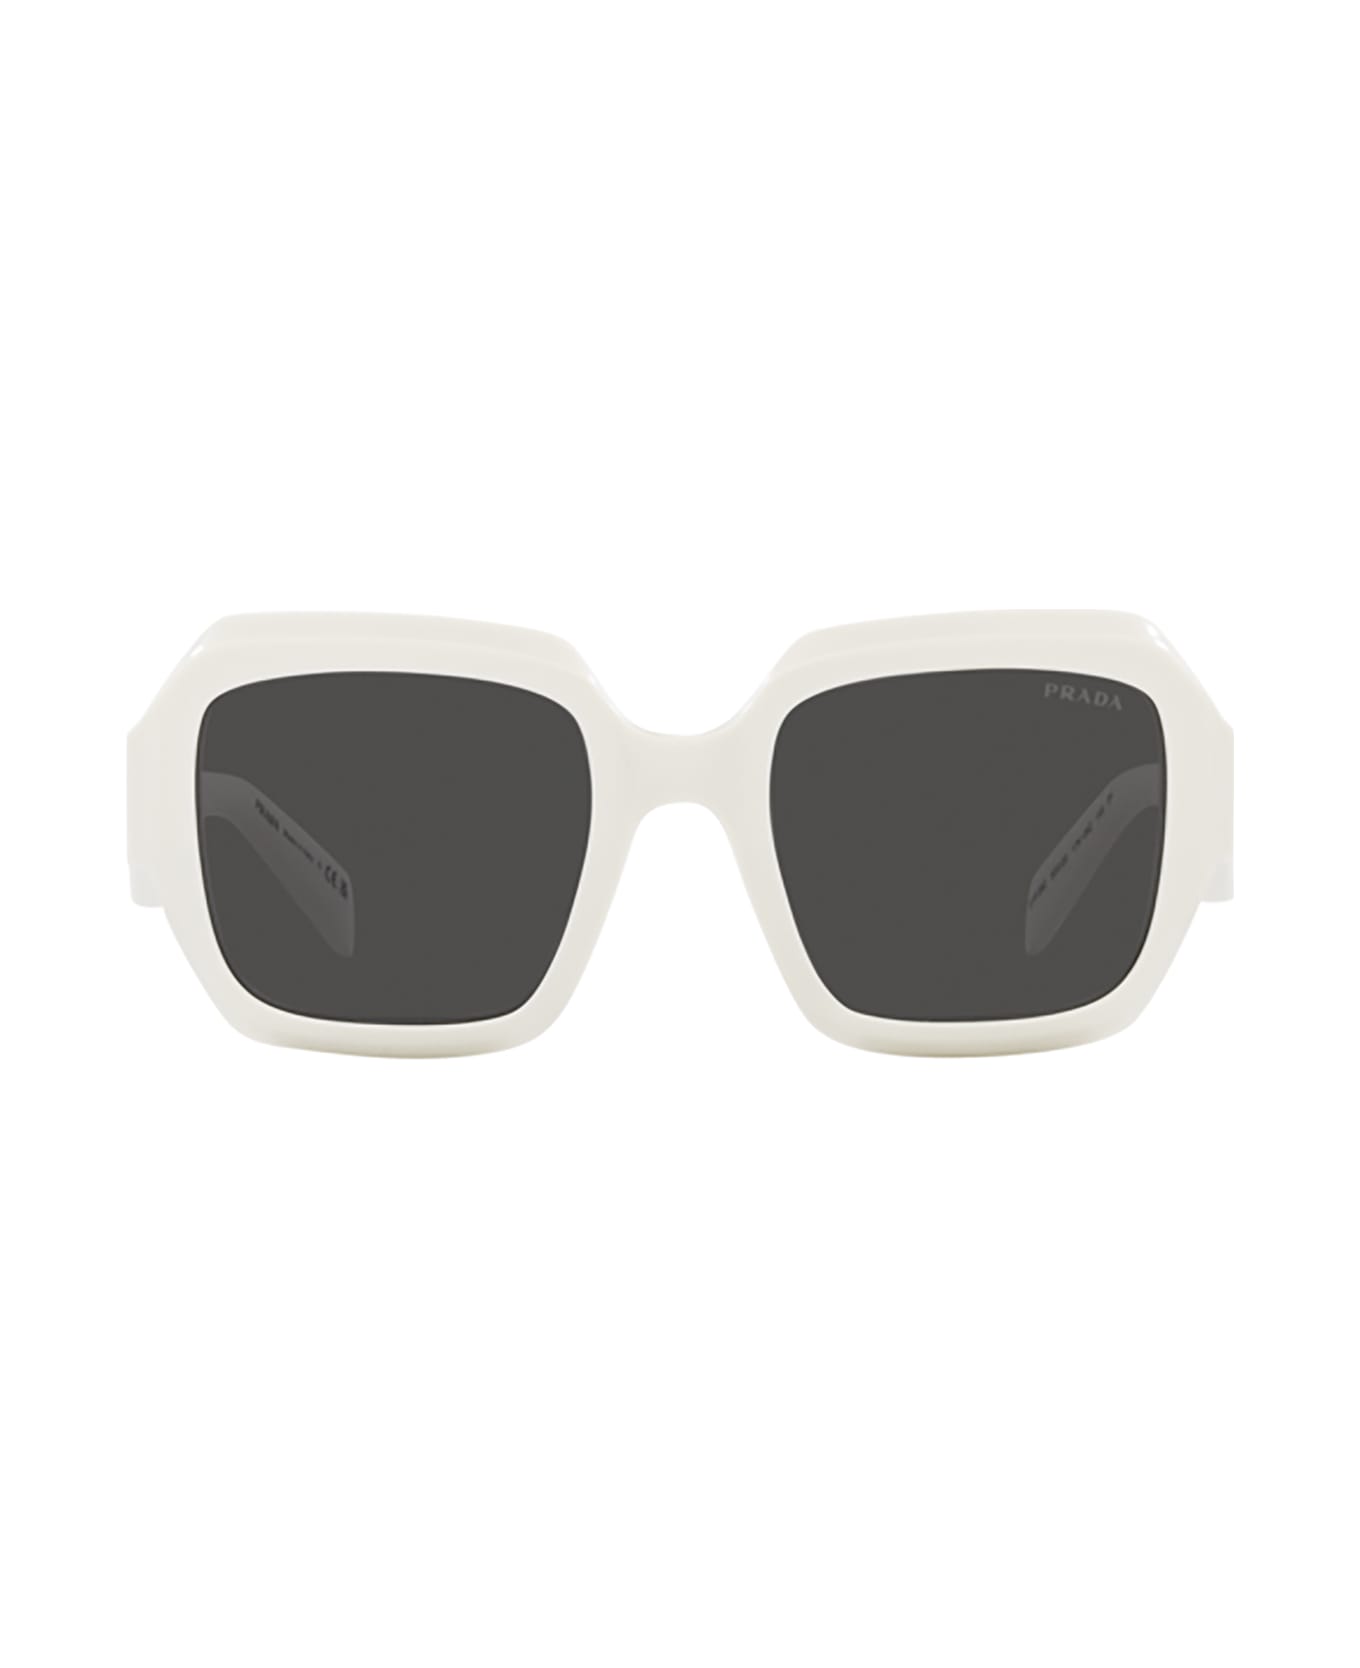 Prada Eyewear Pr 28zs Black / Talc Sunglasses - Black / Talc